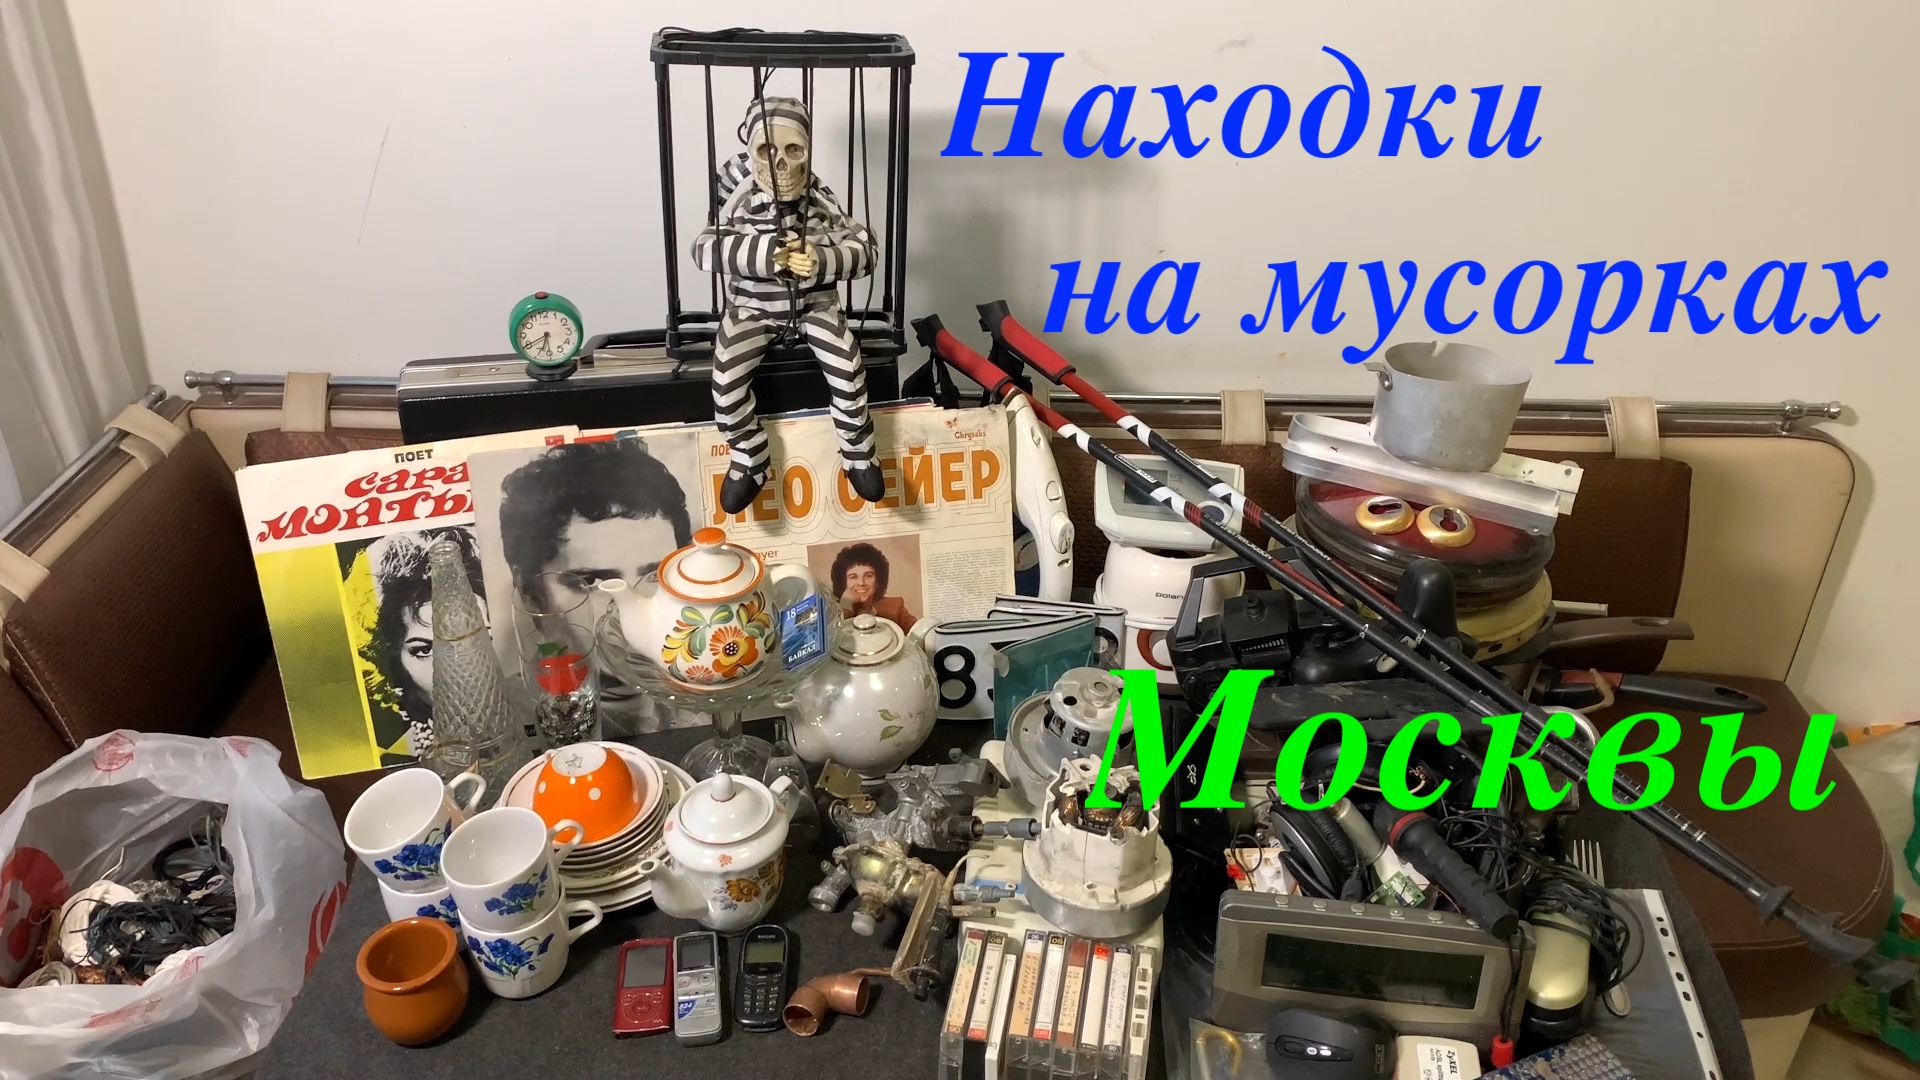 Вечерний Сталк #38: находки на мусорках Москвы